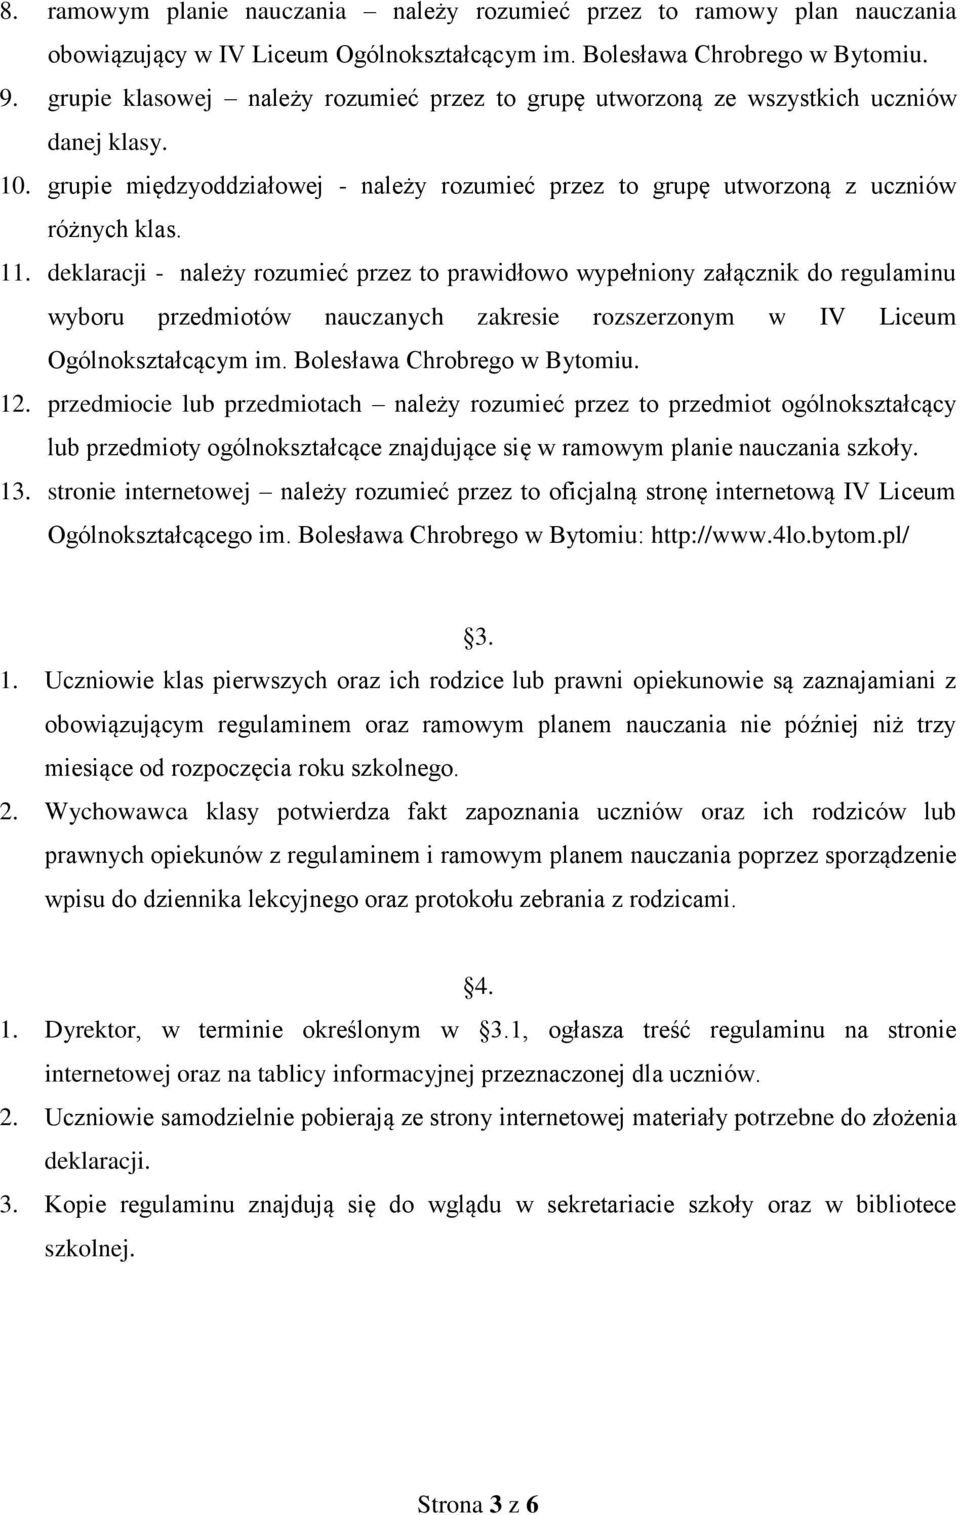 deklaracji - należy rozumieć przez to prawidłowo wypełniony załącznik do regulaminu wyboru przedmiotów nauczanych zakresie rozszerzonym w IV Liceum Ogólnokształcącym im. Bolesława Chrobrego w Bytomiu.